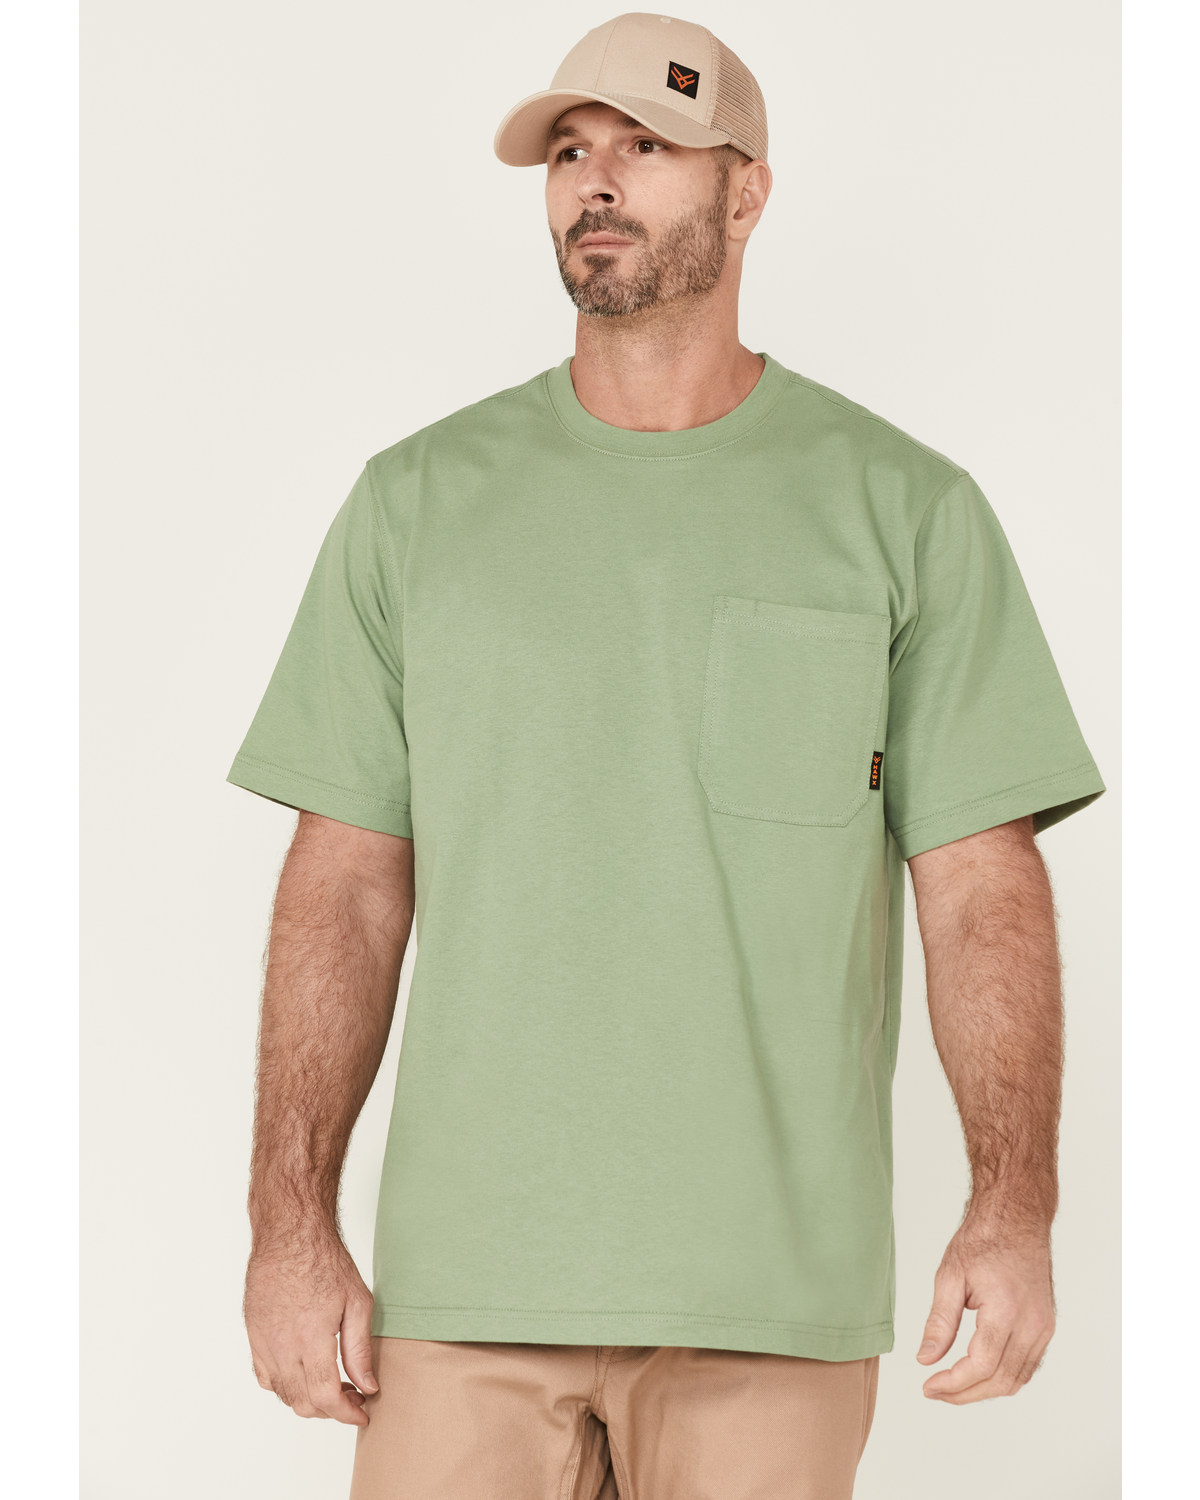 Hawx Men's Solid Loden Force Heavyweight Short Sleeve Work Pocket T-Shirt